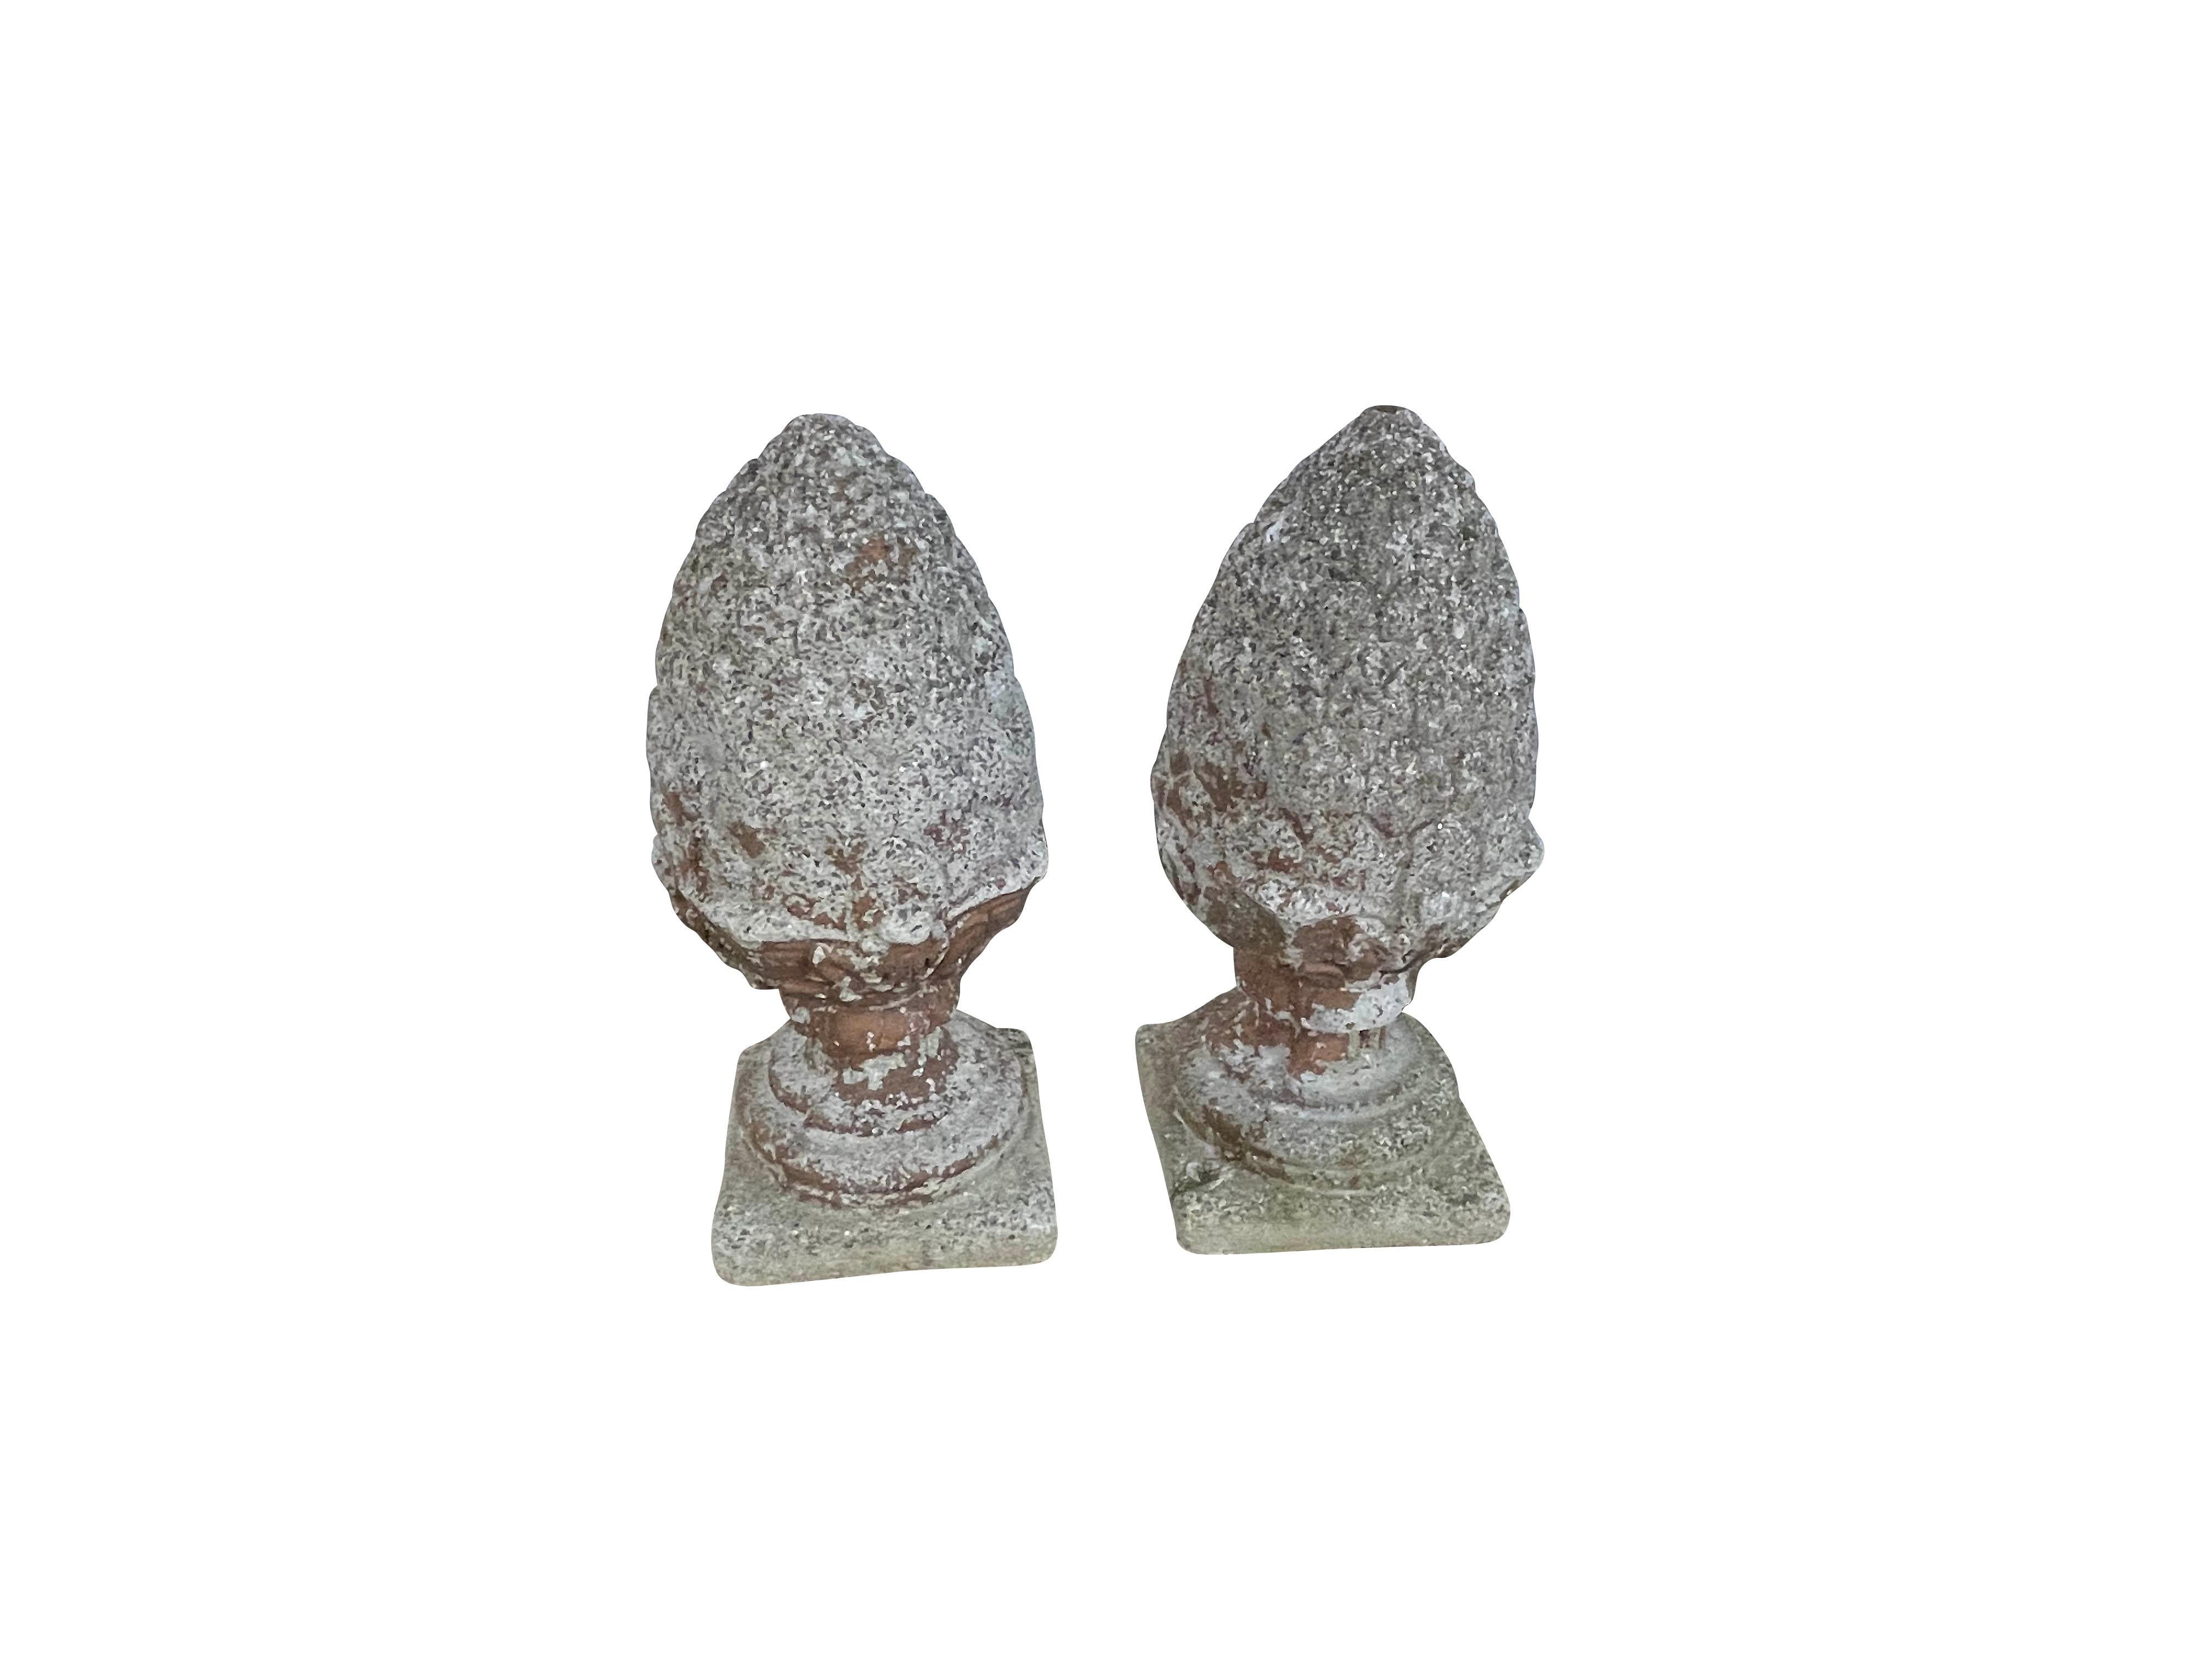 Dieses Paar Vintage-Ananas-Finials wurde in den 1960er Jahren aus rekonstituiertem Stein gegossen. Beide Ananas haben einen geformten Fuß und Hals über einem quadratischen Sockel. Die großen Zettel oben haben gewellte Blattspitzen, die den unteren